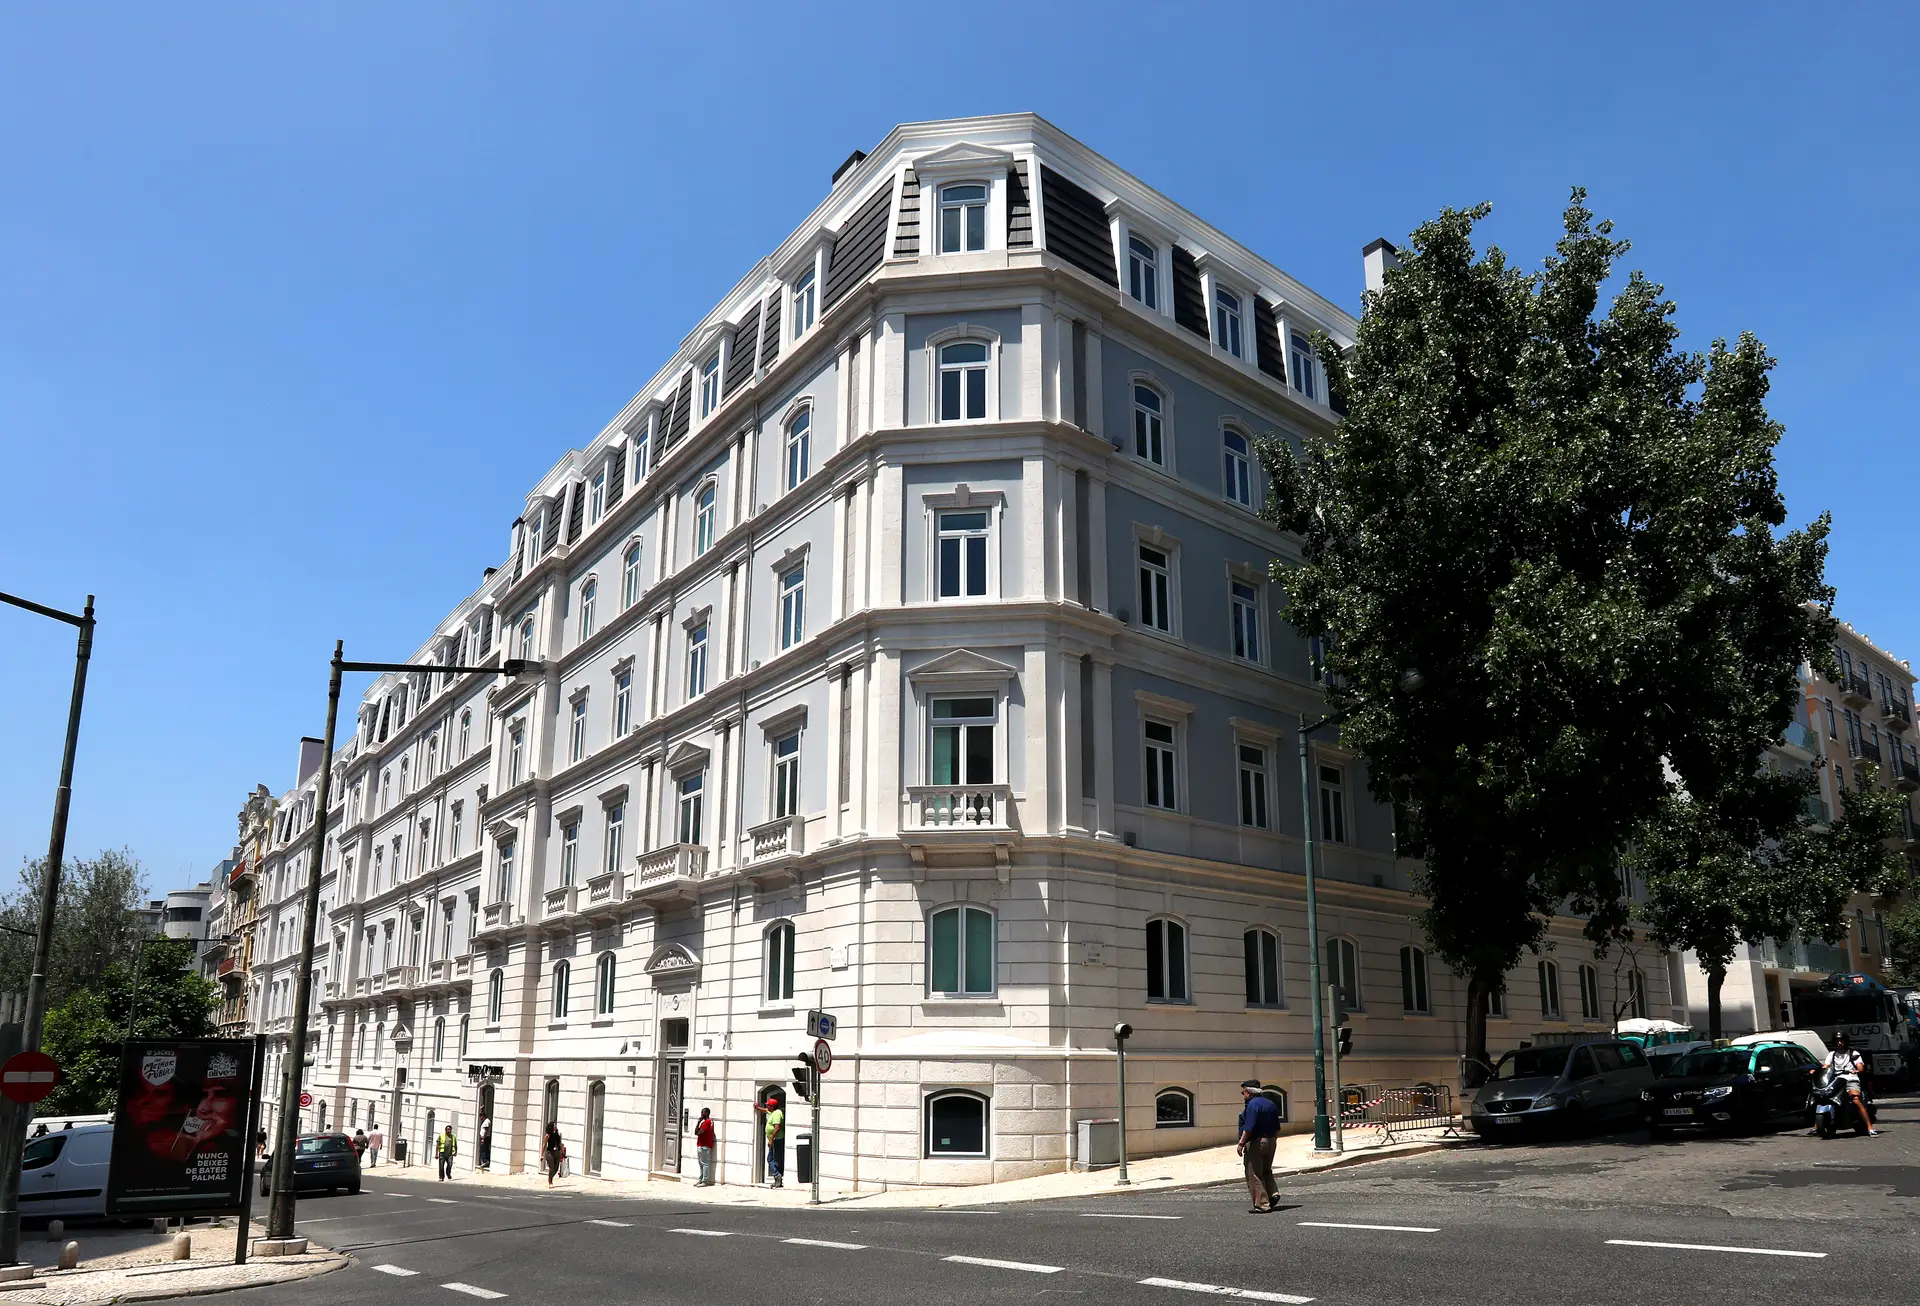 Na categoria de melhor empreendimento de habitação a vitória coube ao SottoMayor Residências. Formado por quatro edifícios, localizados no centro de Lisboa, conta com 97 apartamentos, três lojas, jardins e piscina. A promoção e arquitetura é da Coporgest.